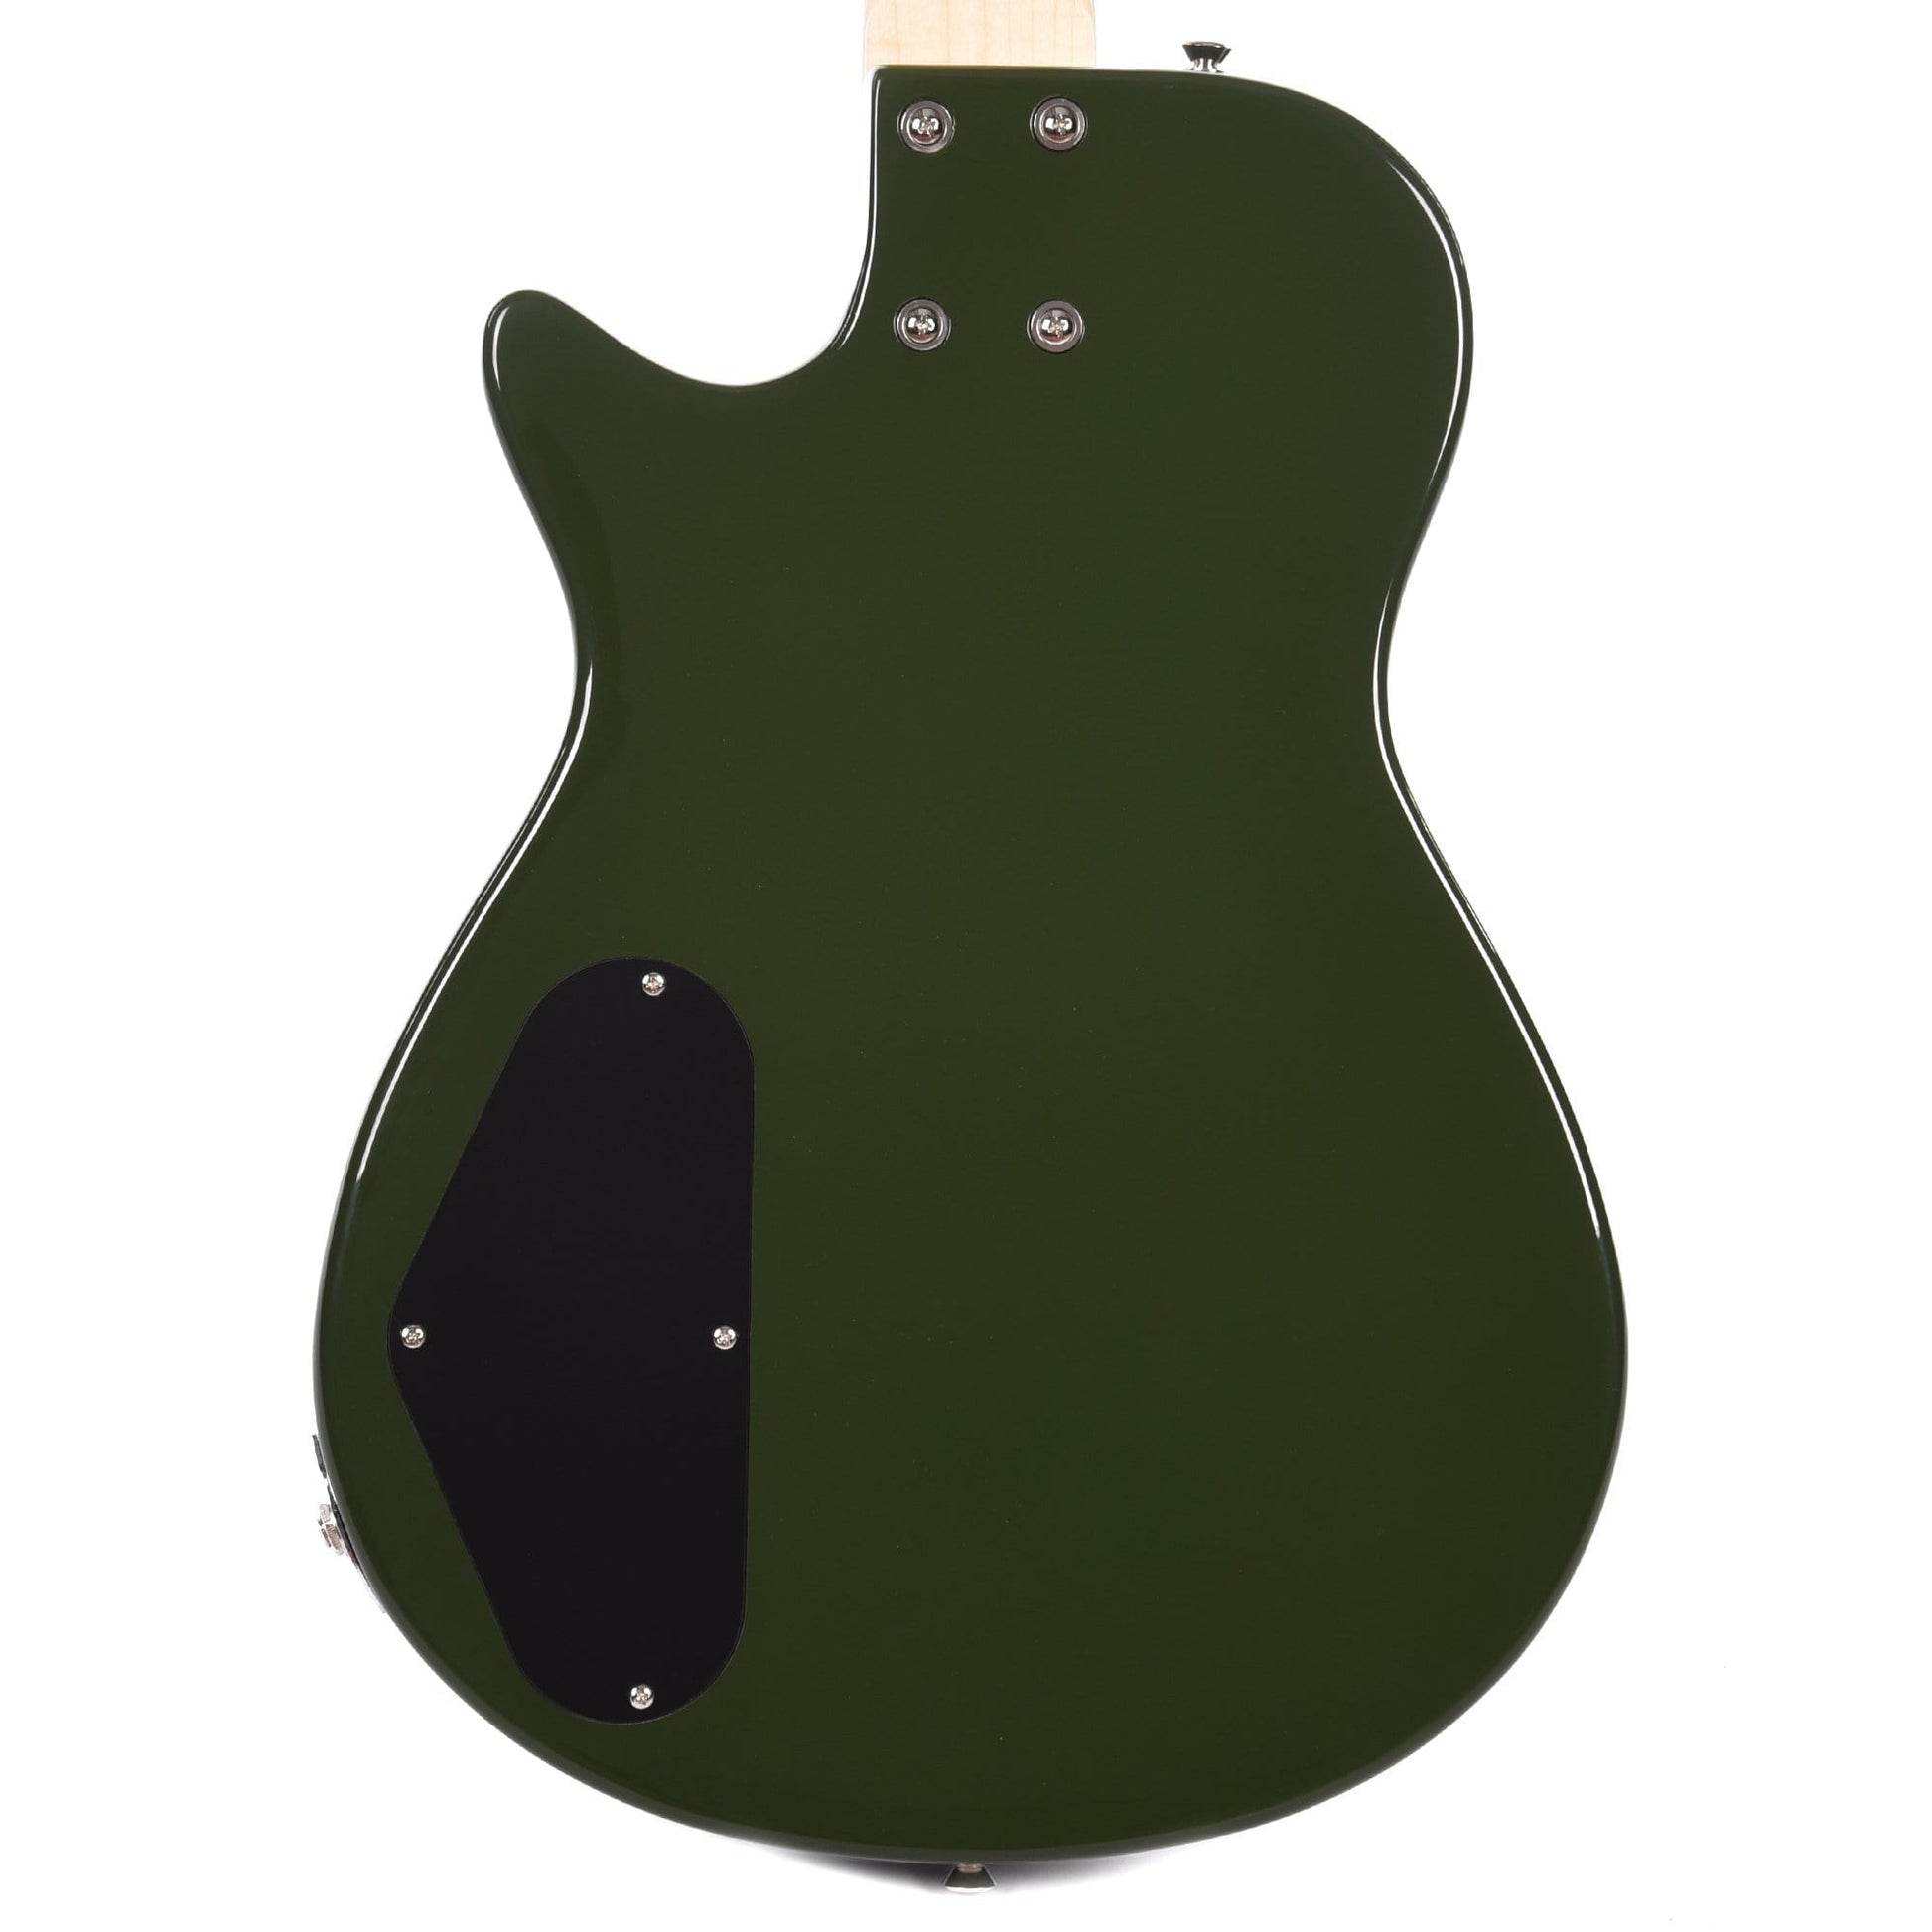 Gretsch G2220 Electromatic Junior Jet Bass Torino Green Bass Guitars / 4-String